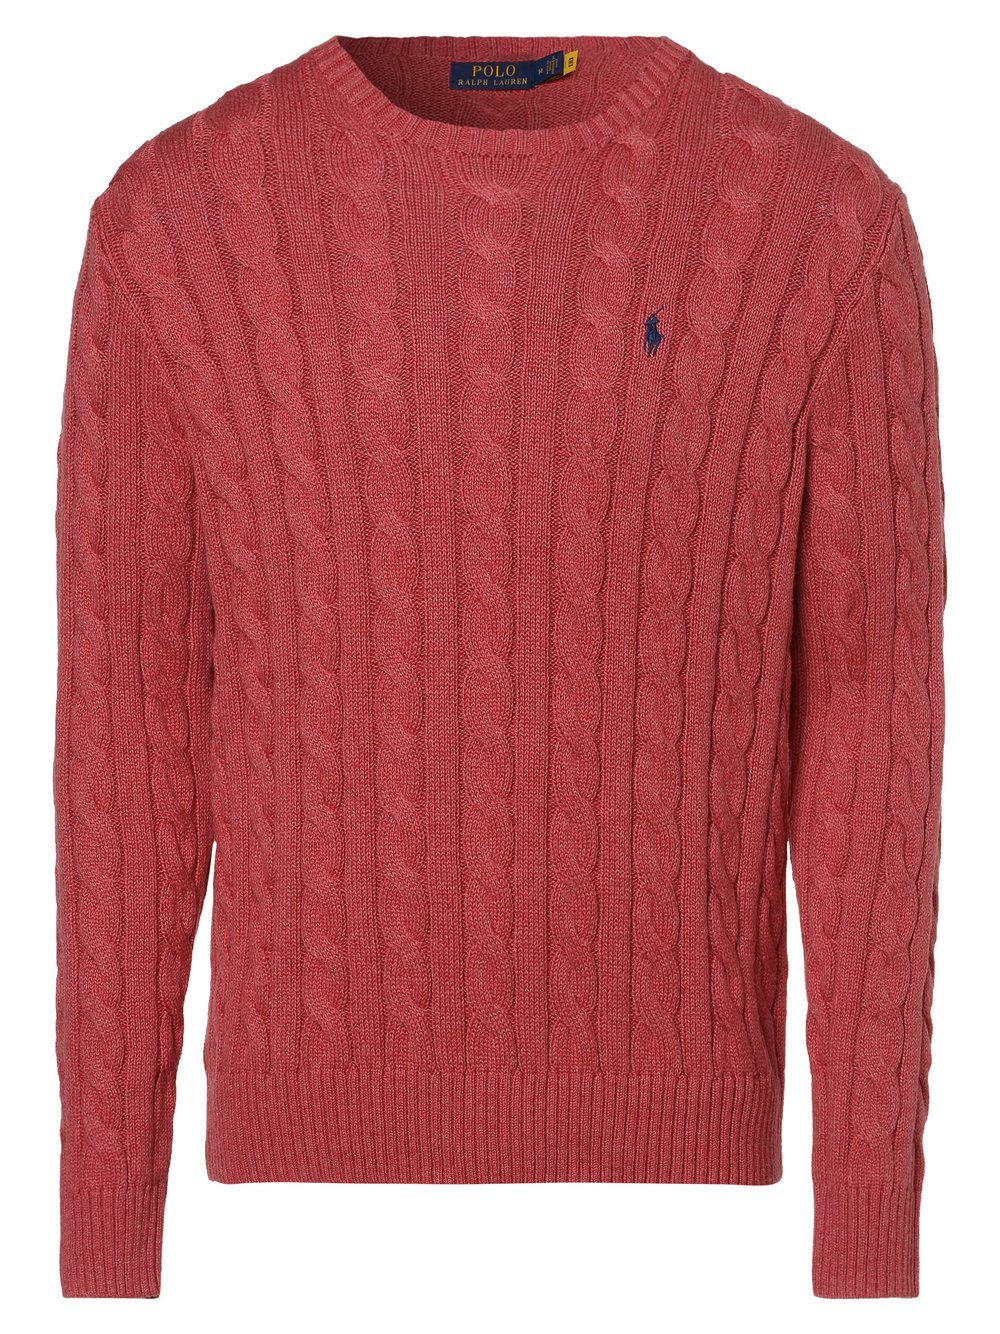 Polo Ralph Lauren - Sweter męski, czerwony|wyrazisty róż